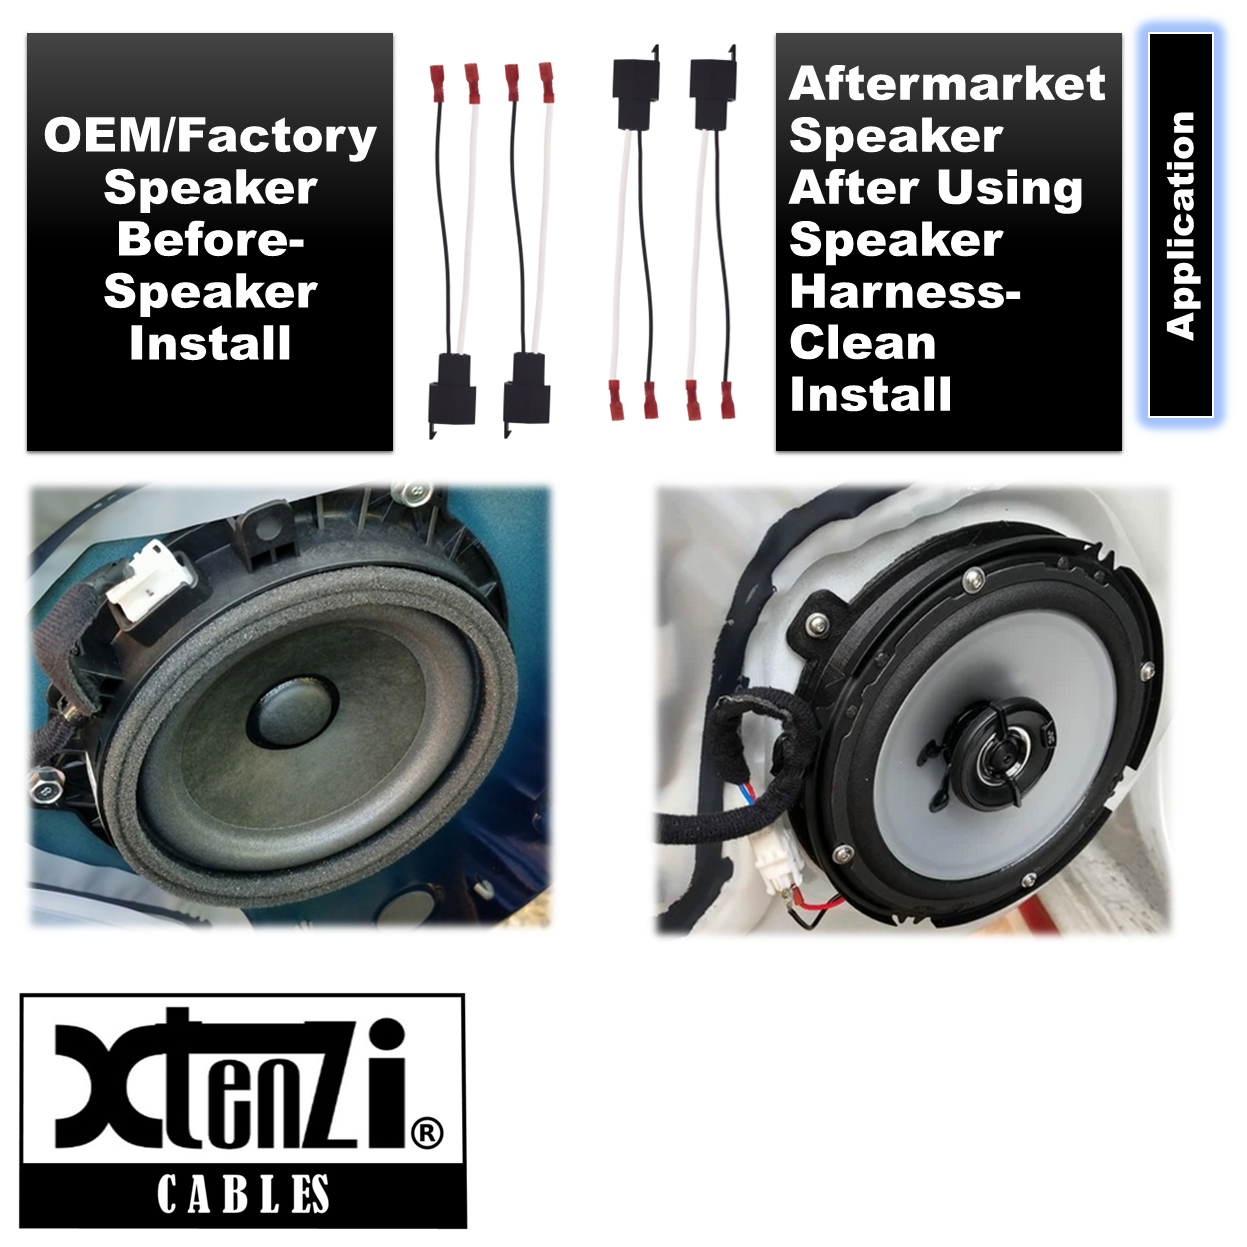 Xtenzi 2 Pair Car Audio Speaker Harness Set for GMC, Chrysler, Dodge Vehicles